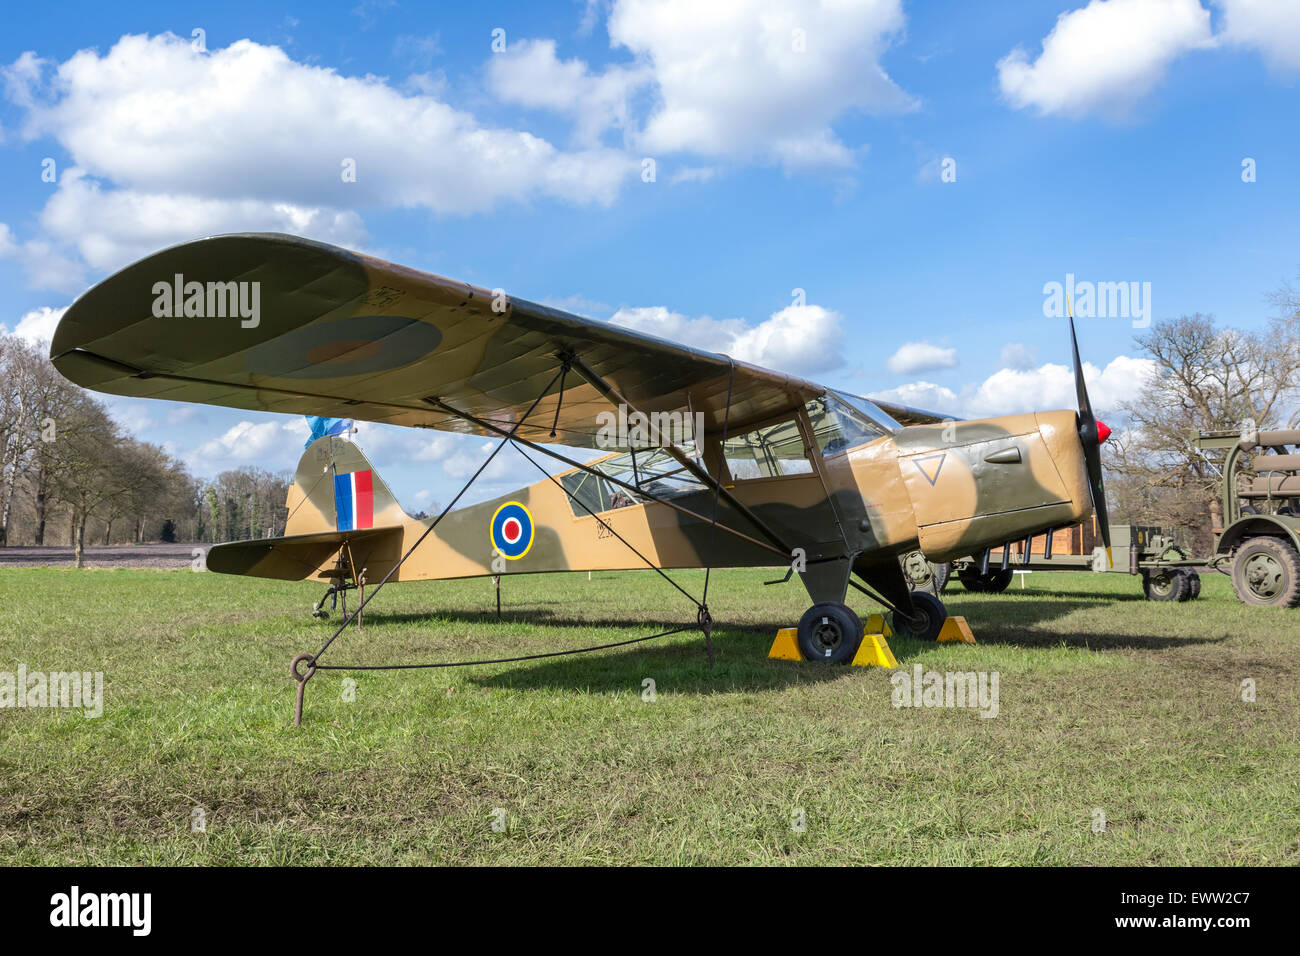 Vecchio aereo militare su erba verde con cielo blu e nuvole bianche in mostra all'aperto Foto Stock